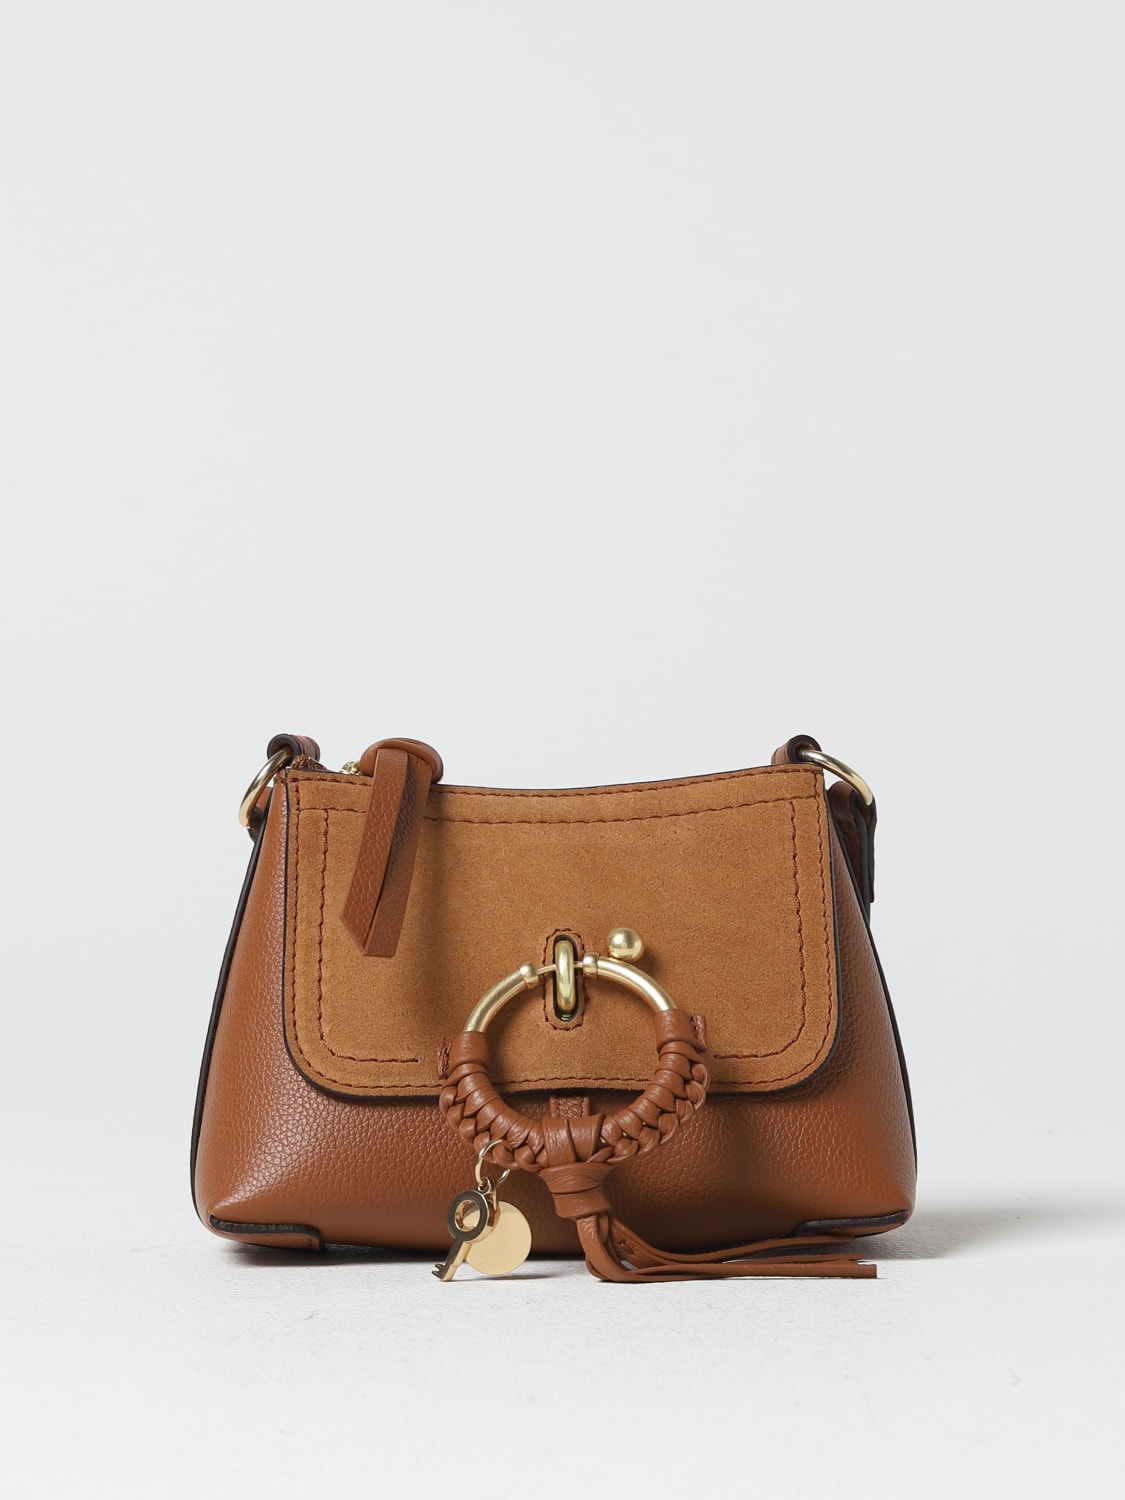 See by Chloé Woman's Mini Bag